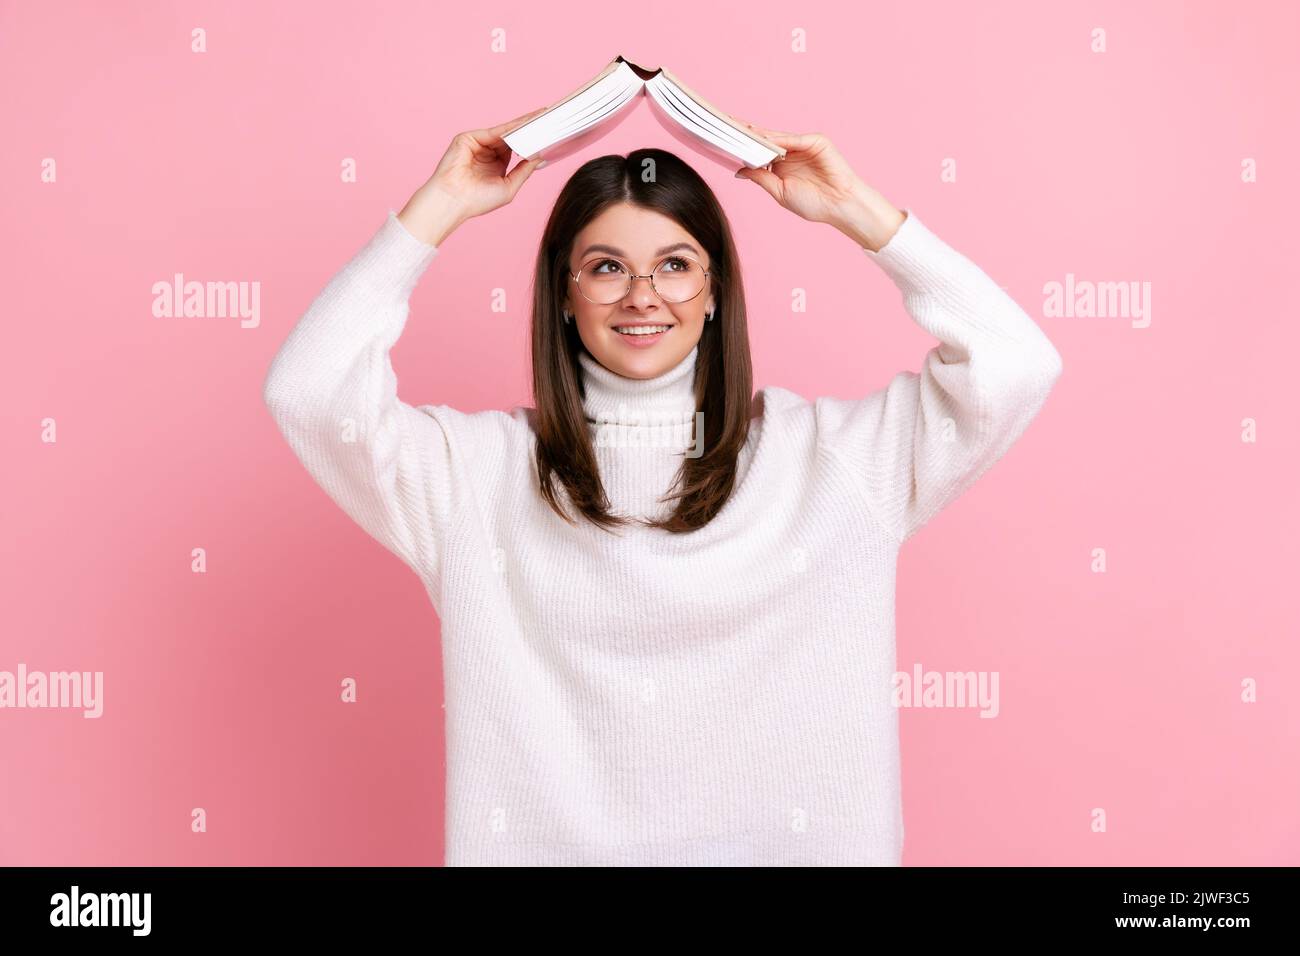 Lächelndes Mädchen, das den Kopf mit einem Buch bedeckt und mit klugen Augen weit weg sieht, träumt von einer zukünftigen Karriere und trägt einen weißen Pullover im lässigen Stil. Innenaufnahme des Studios isoliert auf rosa Hintergrund. Stockfoto